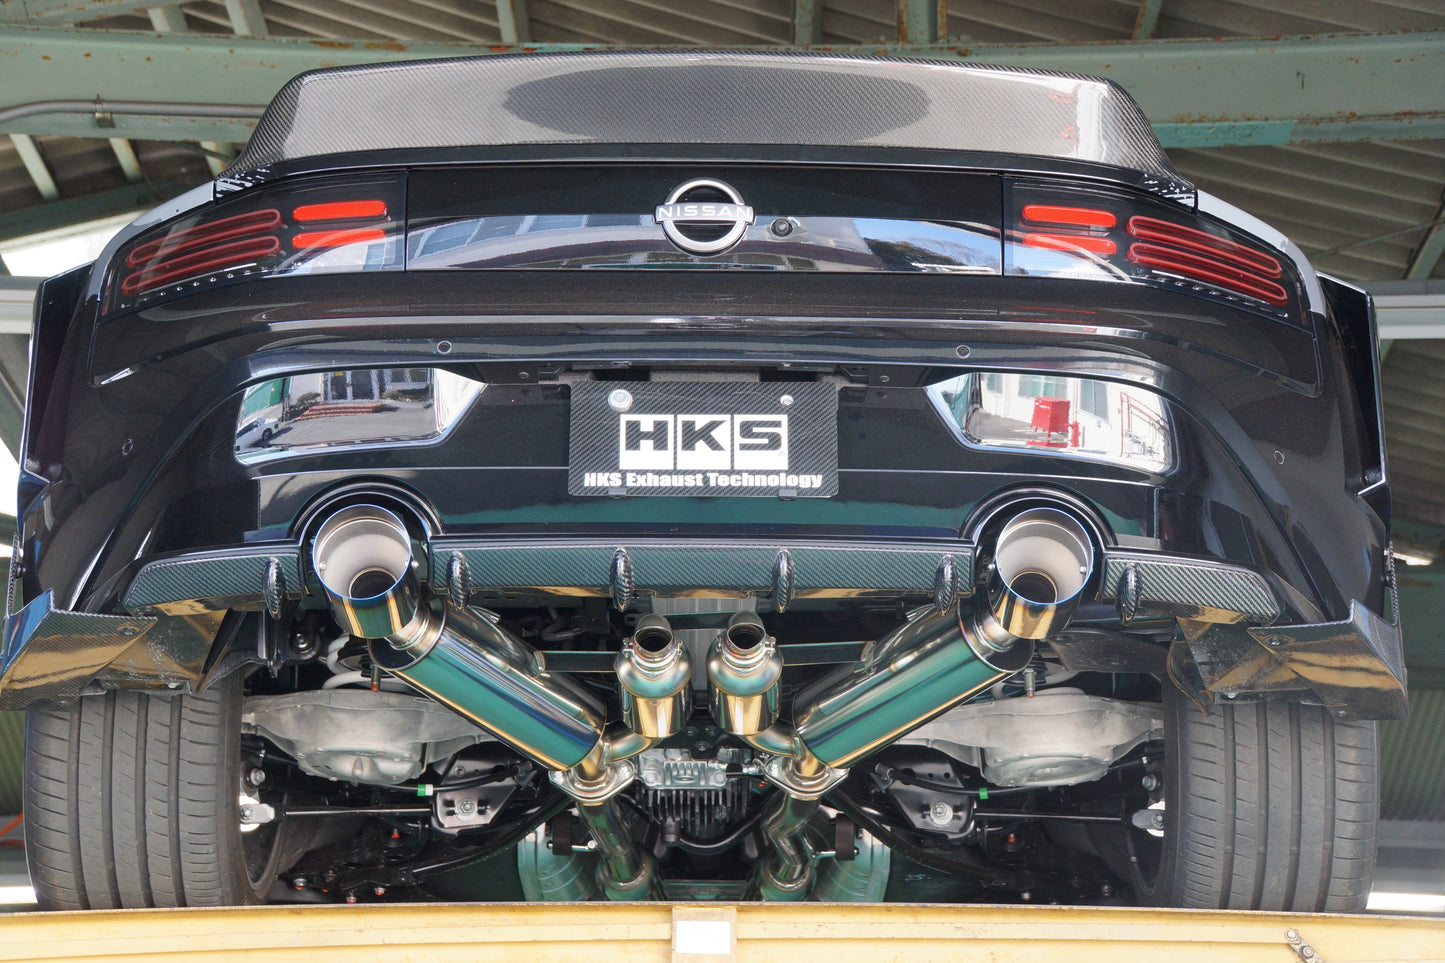 HKS Full Dual Muffler Catback Exhaust System Suit Nissan 400Z Z34 VR30DDTT